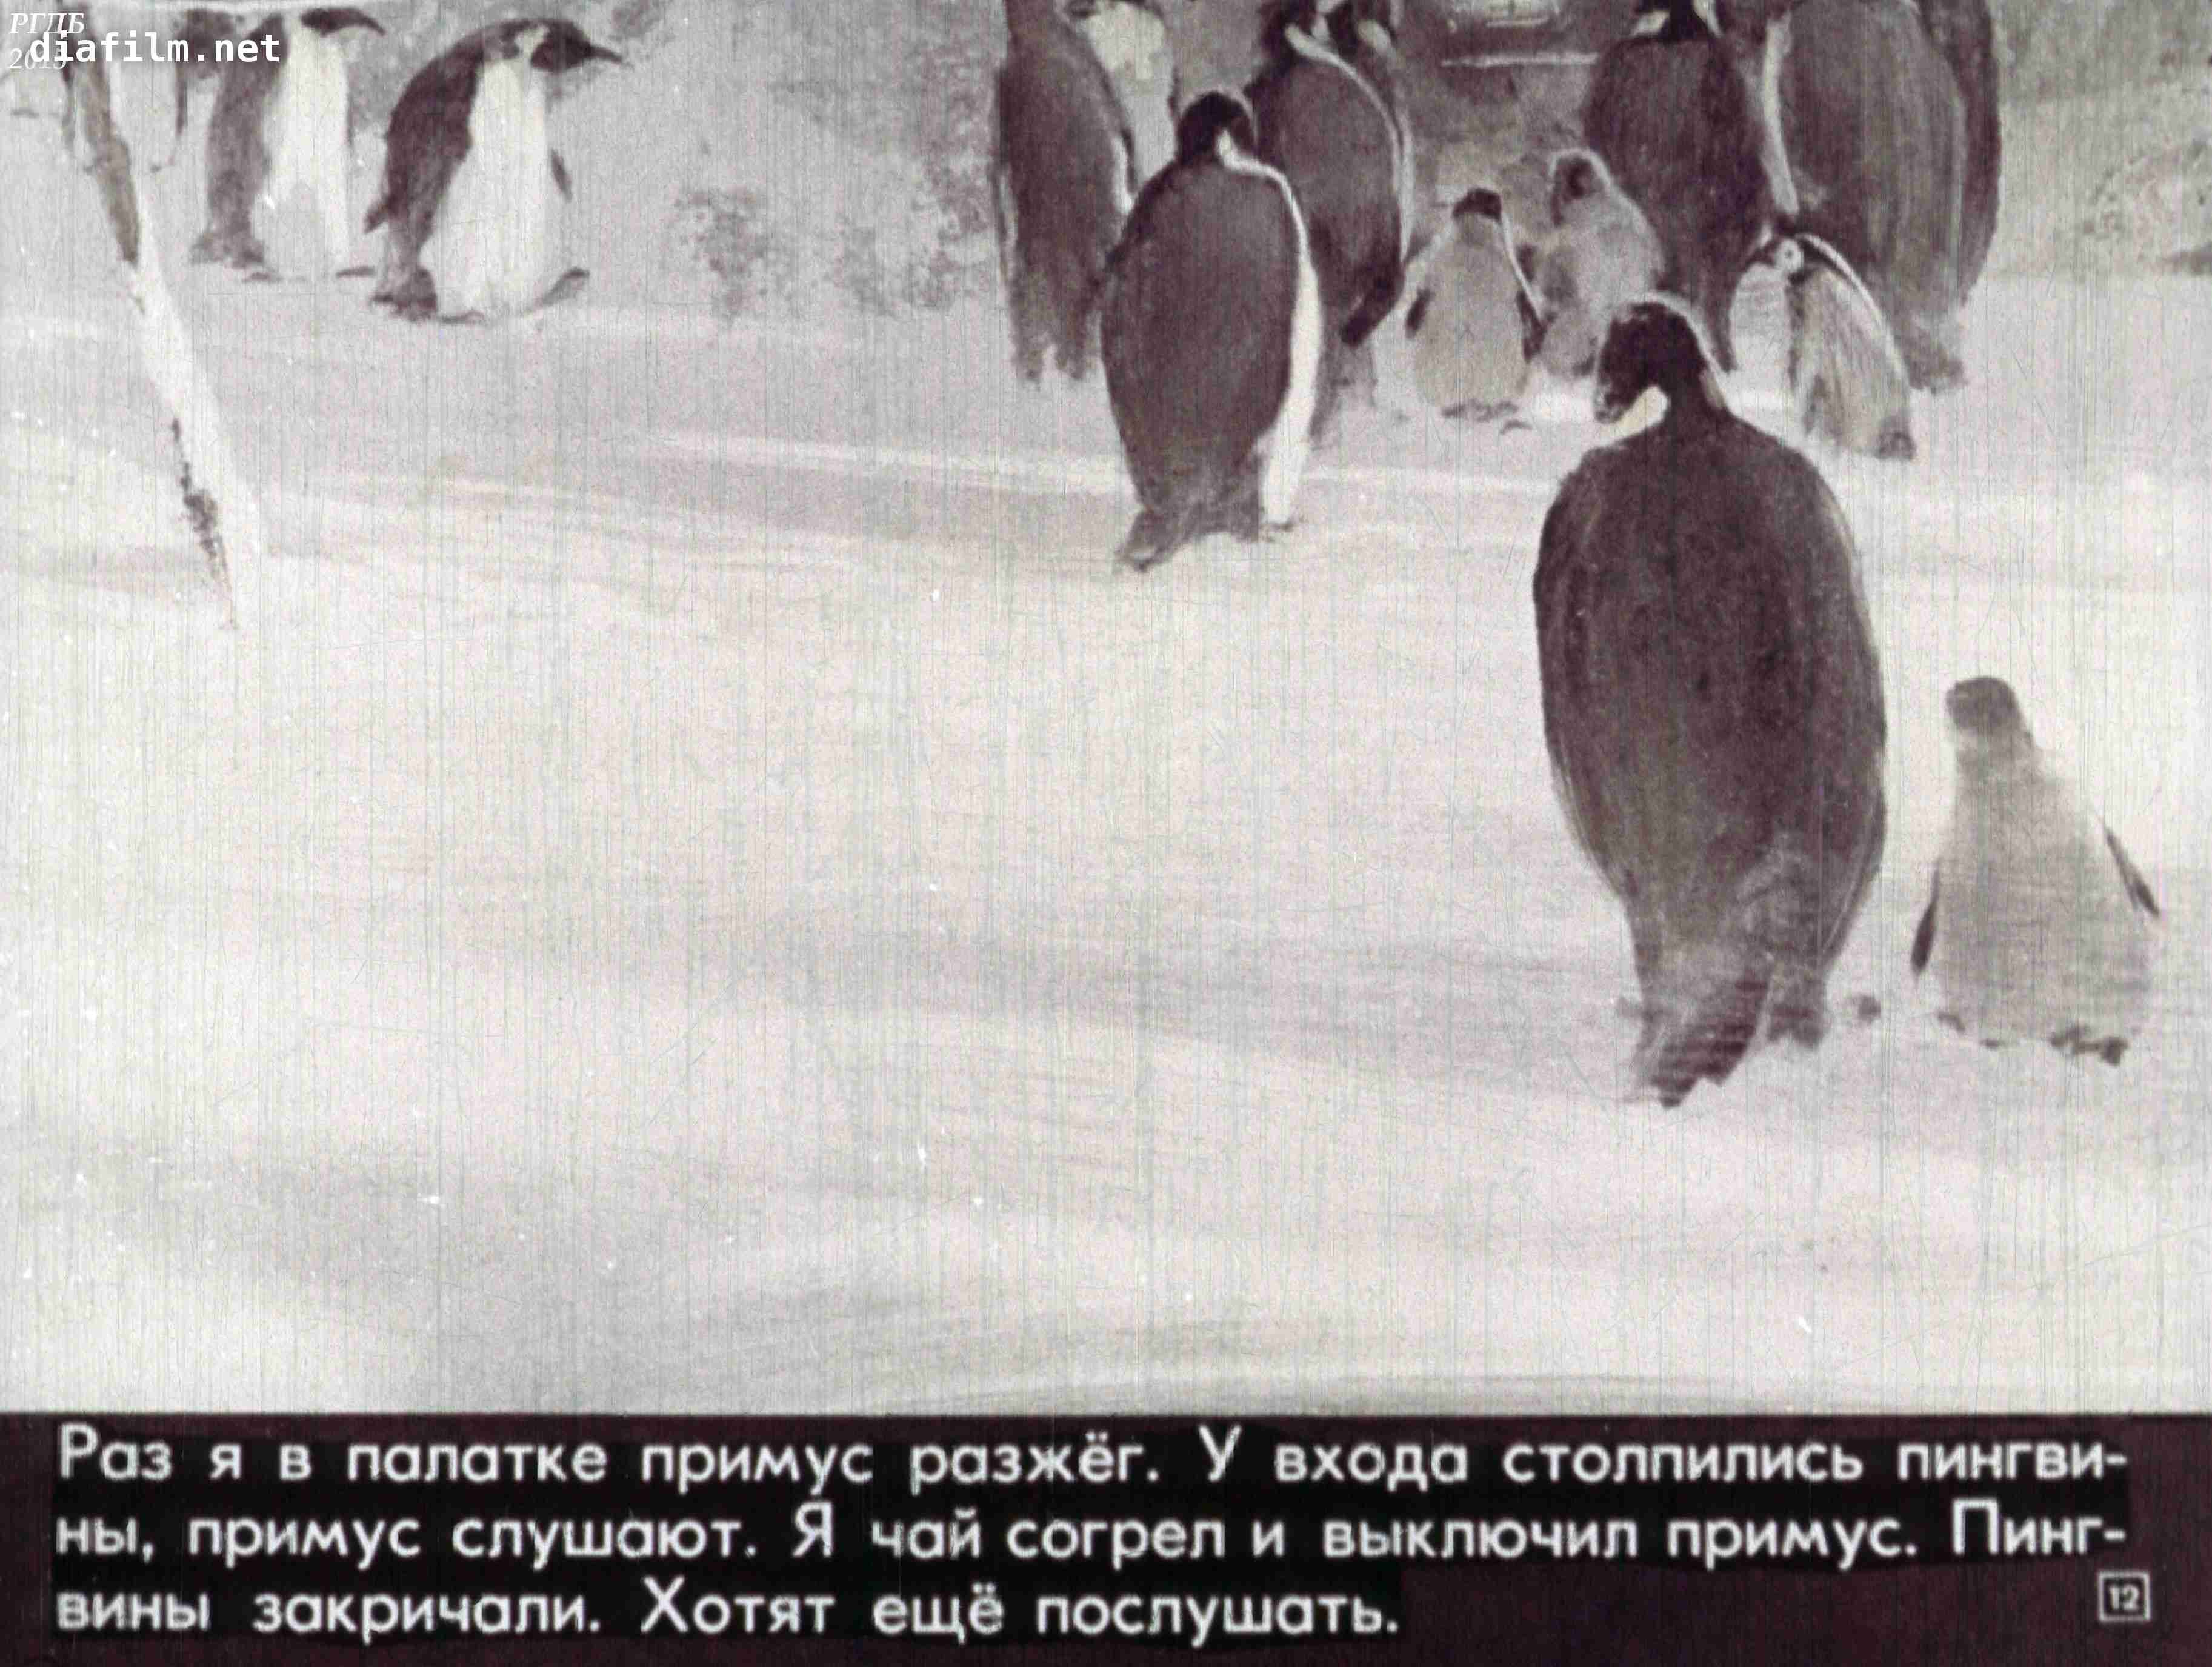 Про пингвинов снегирев занятие в старшей группе. Г. Снегирёв "про пингвинов" 11. Г Снегирева про пингвинов рассказ. Г Снегирев про пингвинов иллюстрации. Текст рассказов Снегирева про пингвинов.